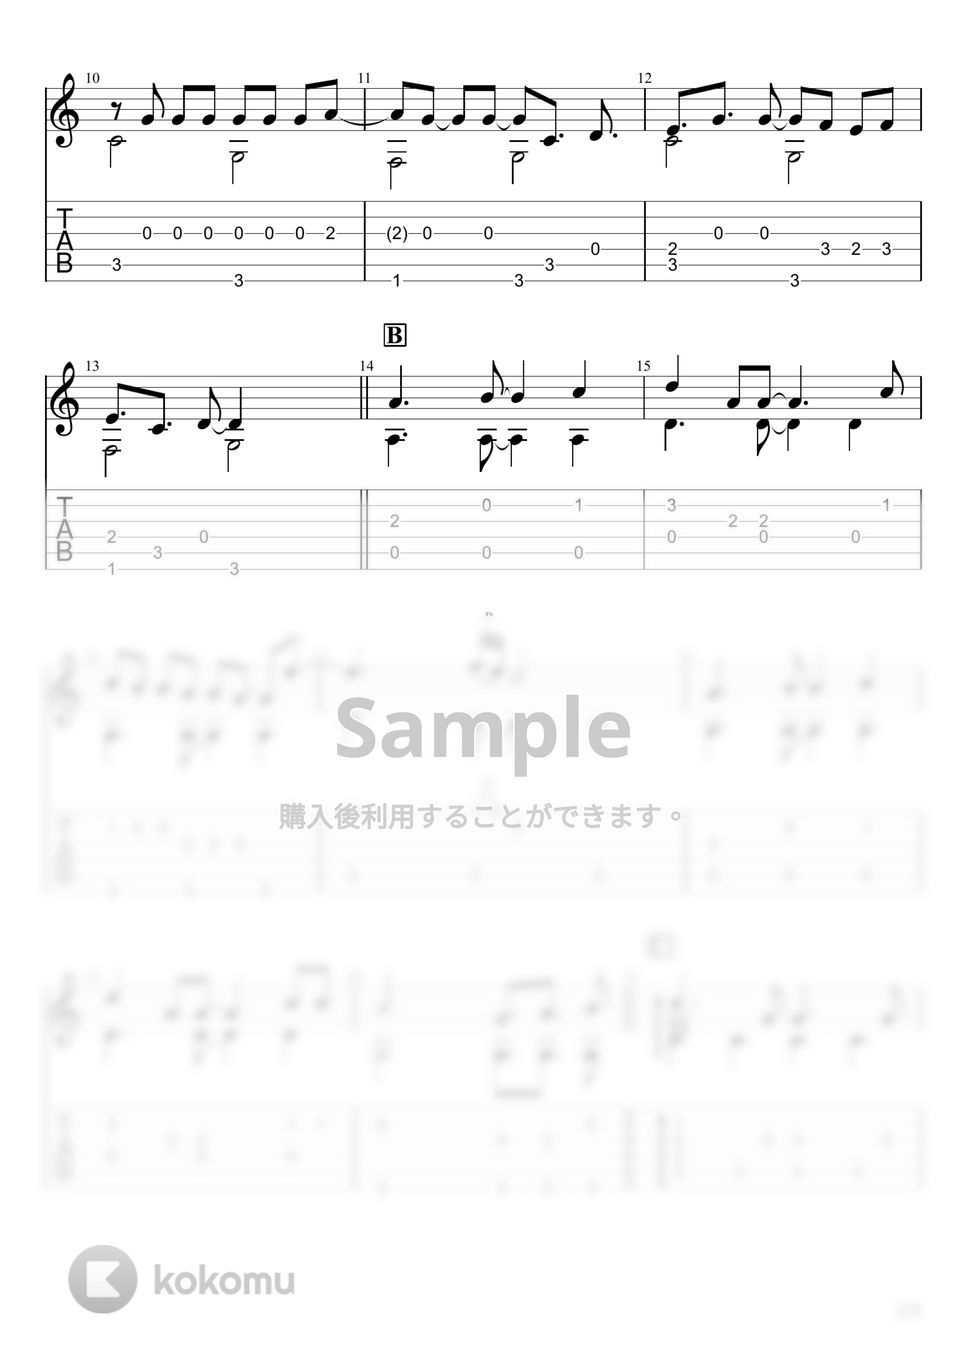 スピッツ - ときめきpart1 (ソロギター) by u3danchou